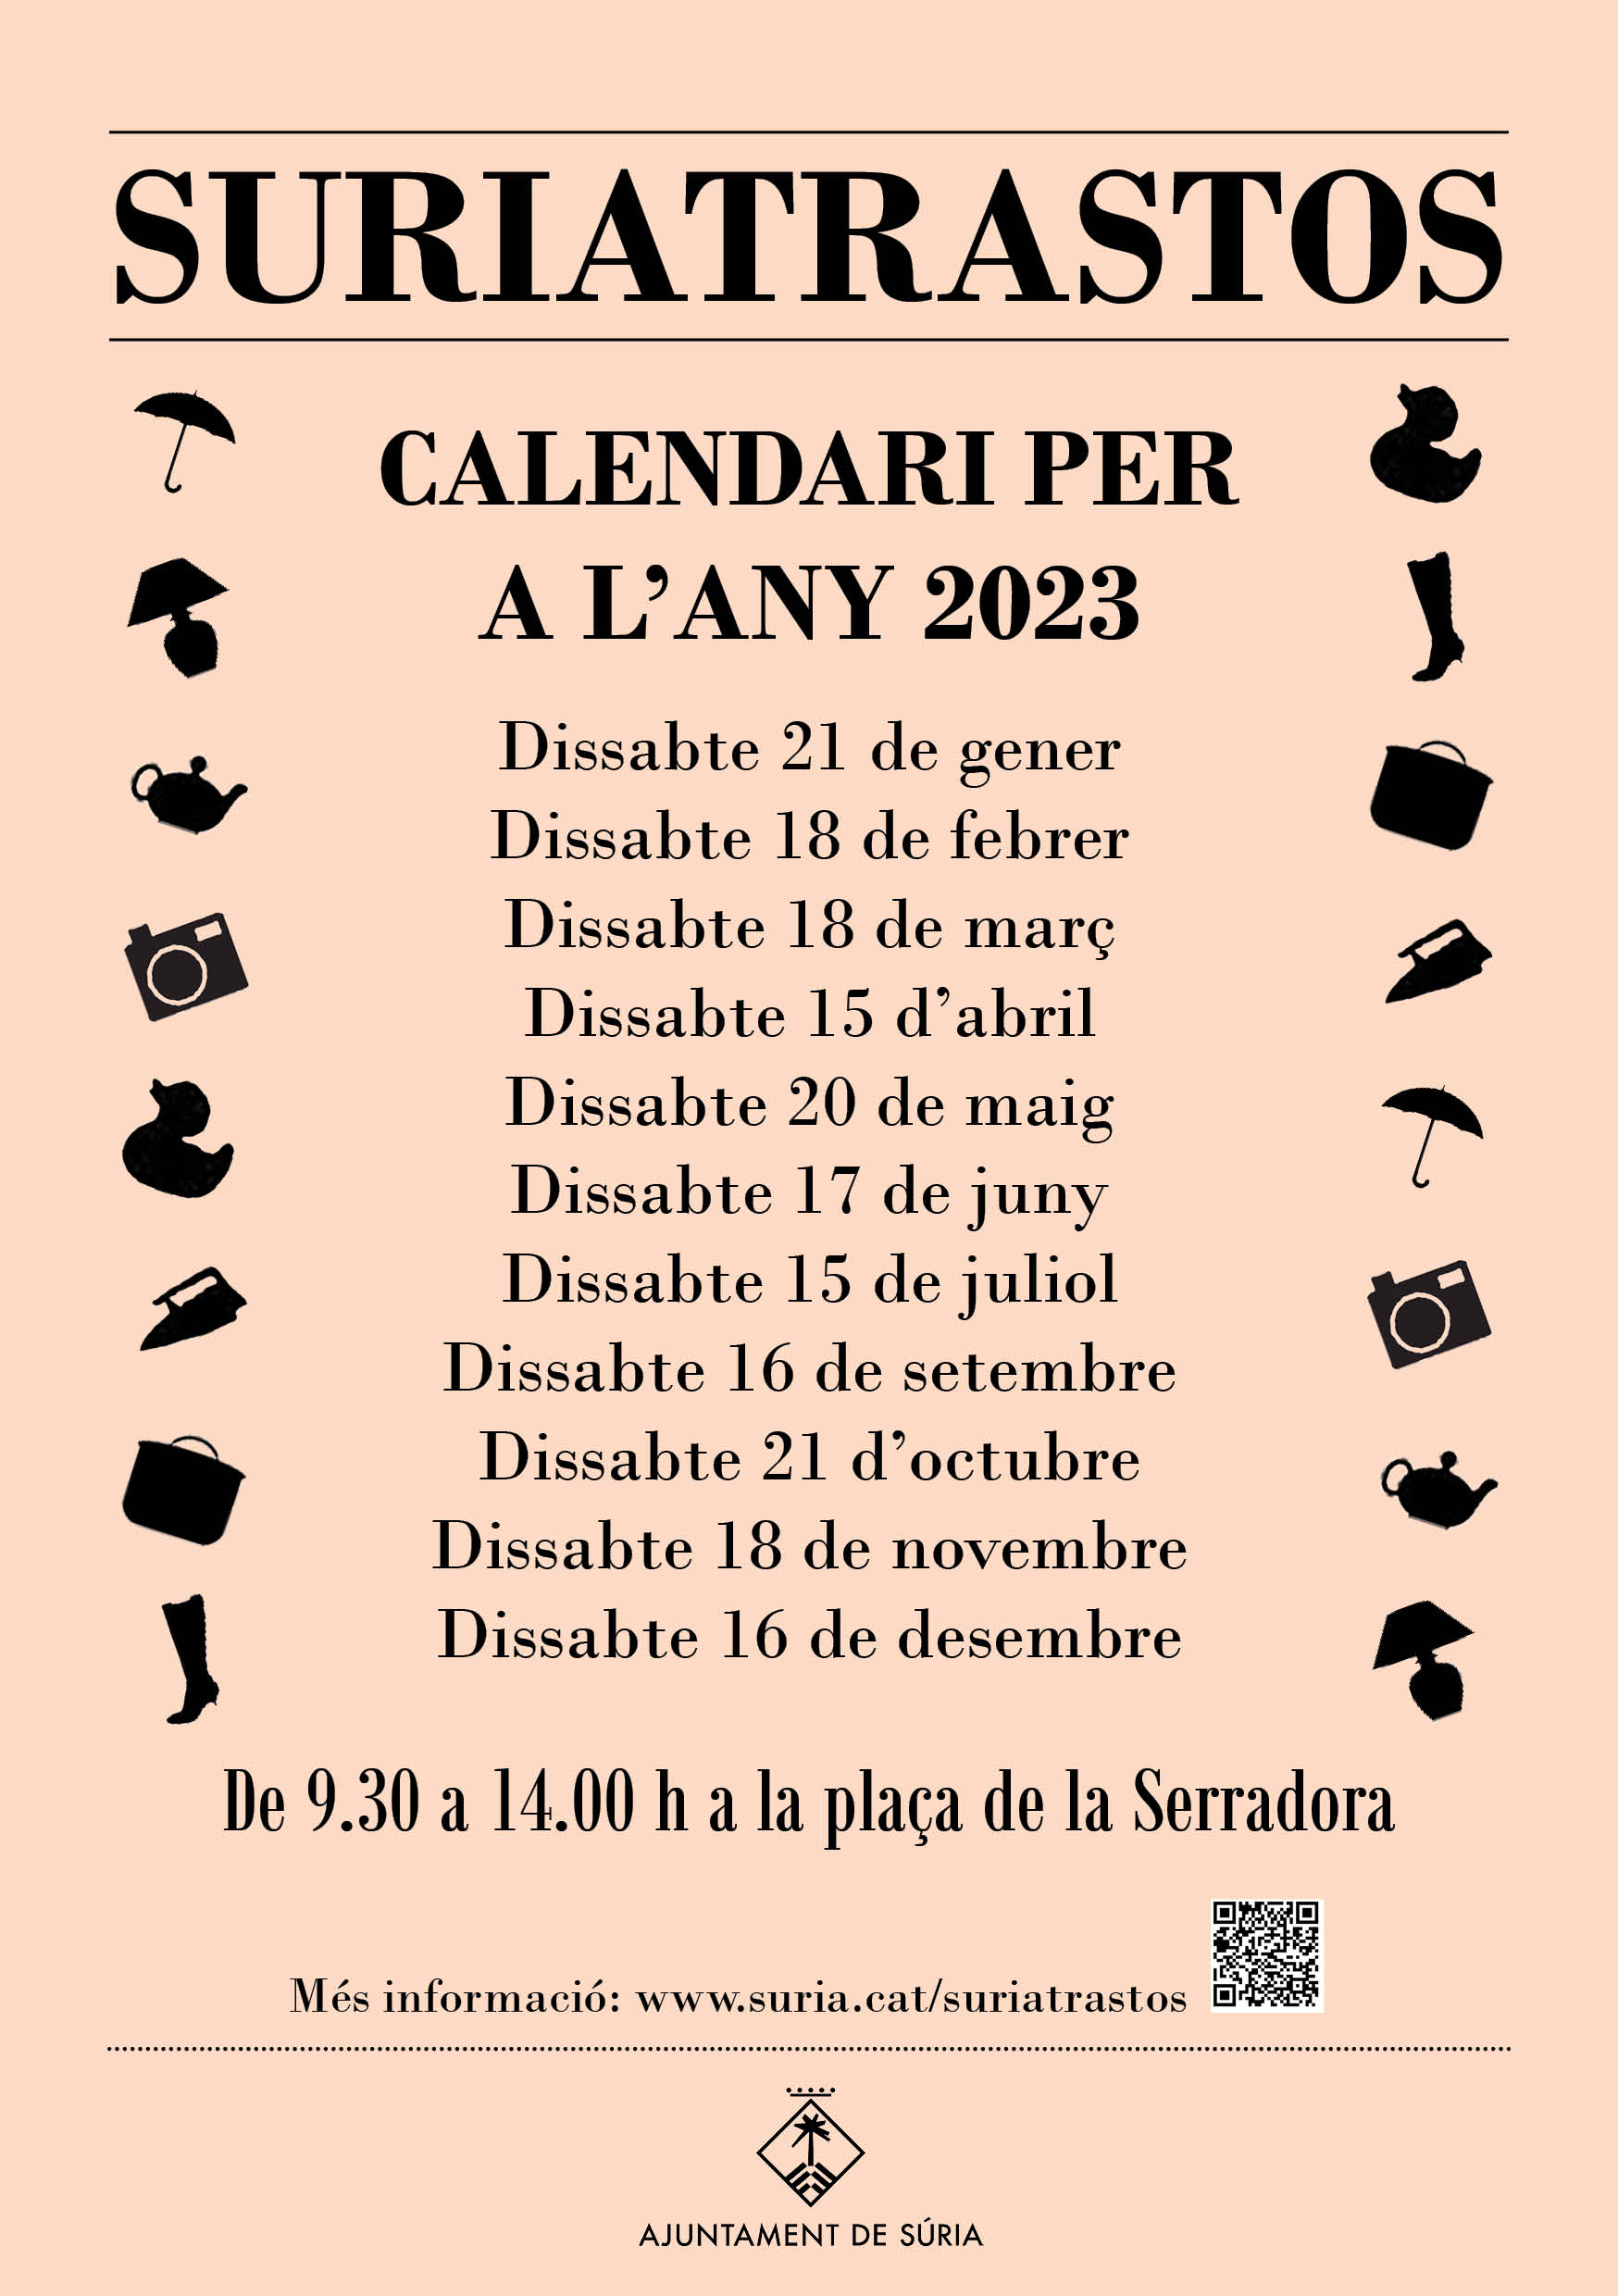 Calendari del mercat Suriatrastos per a l'any 2023.